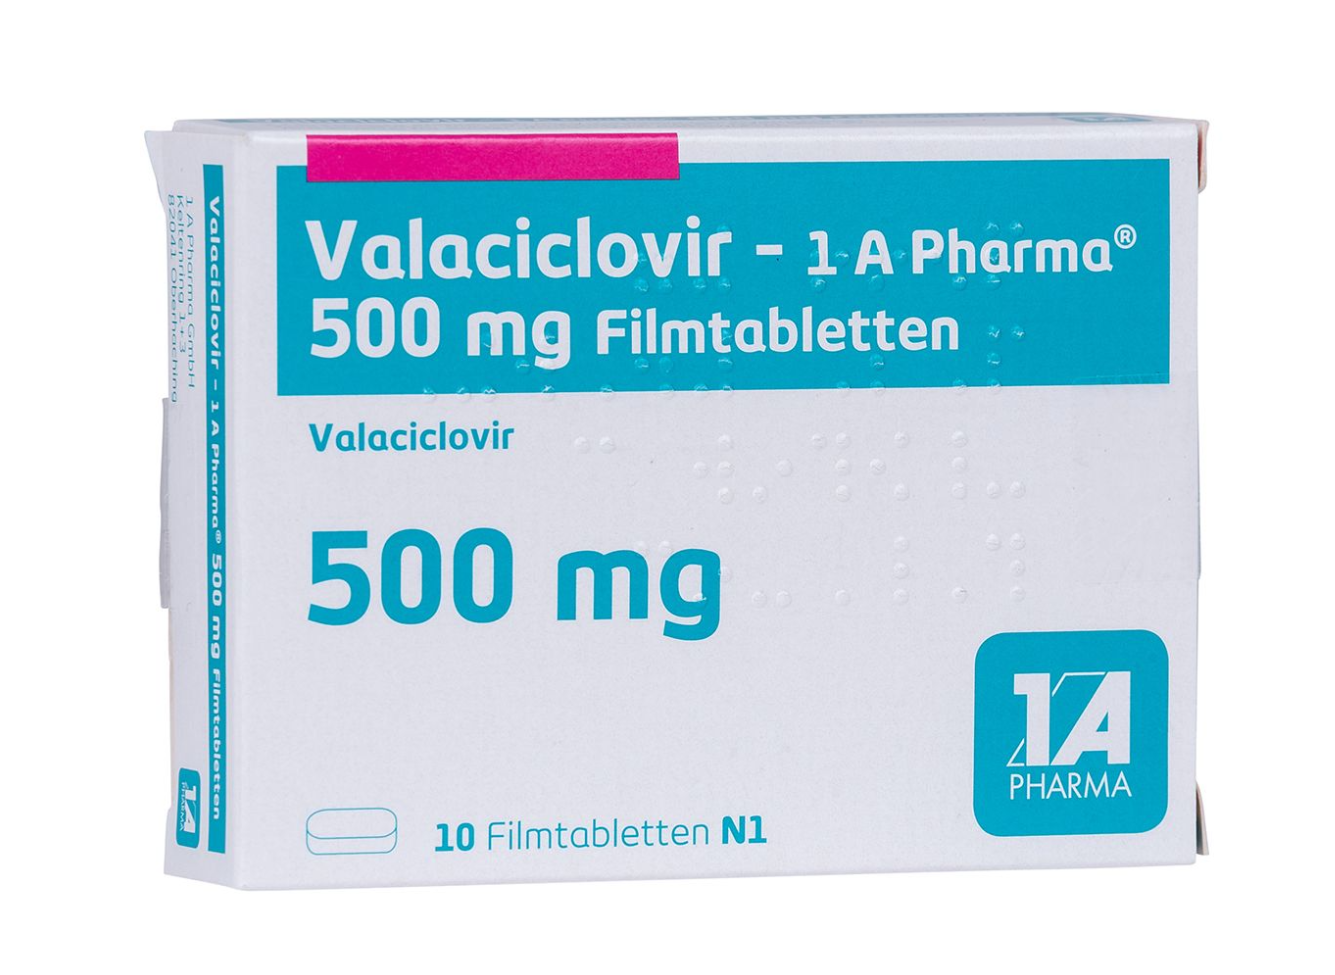 Valaciclovir ist ein virenhemmendes Medikament, welches Infektionen, wie z.B. Herpes (inklusive Genitalherpes) bekämpft.